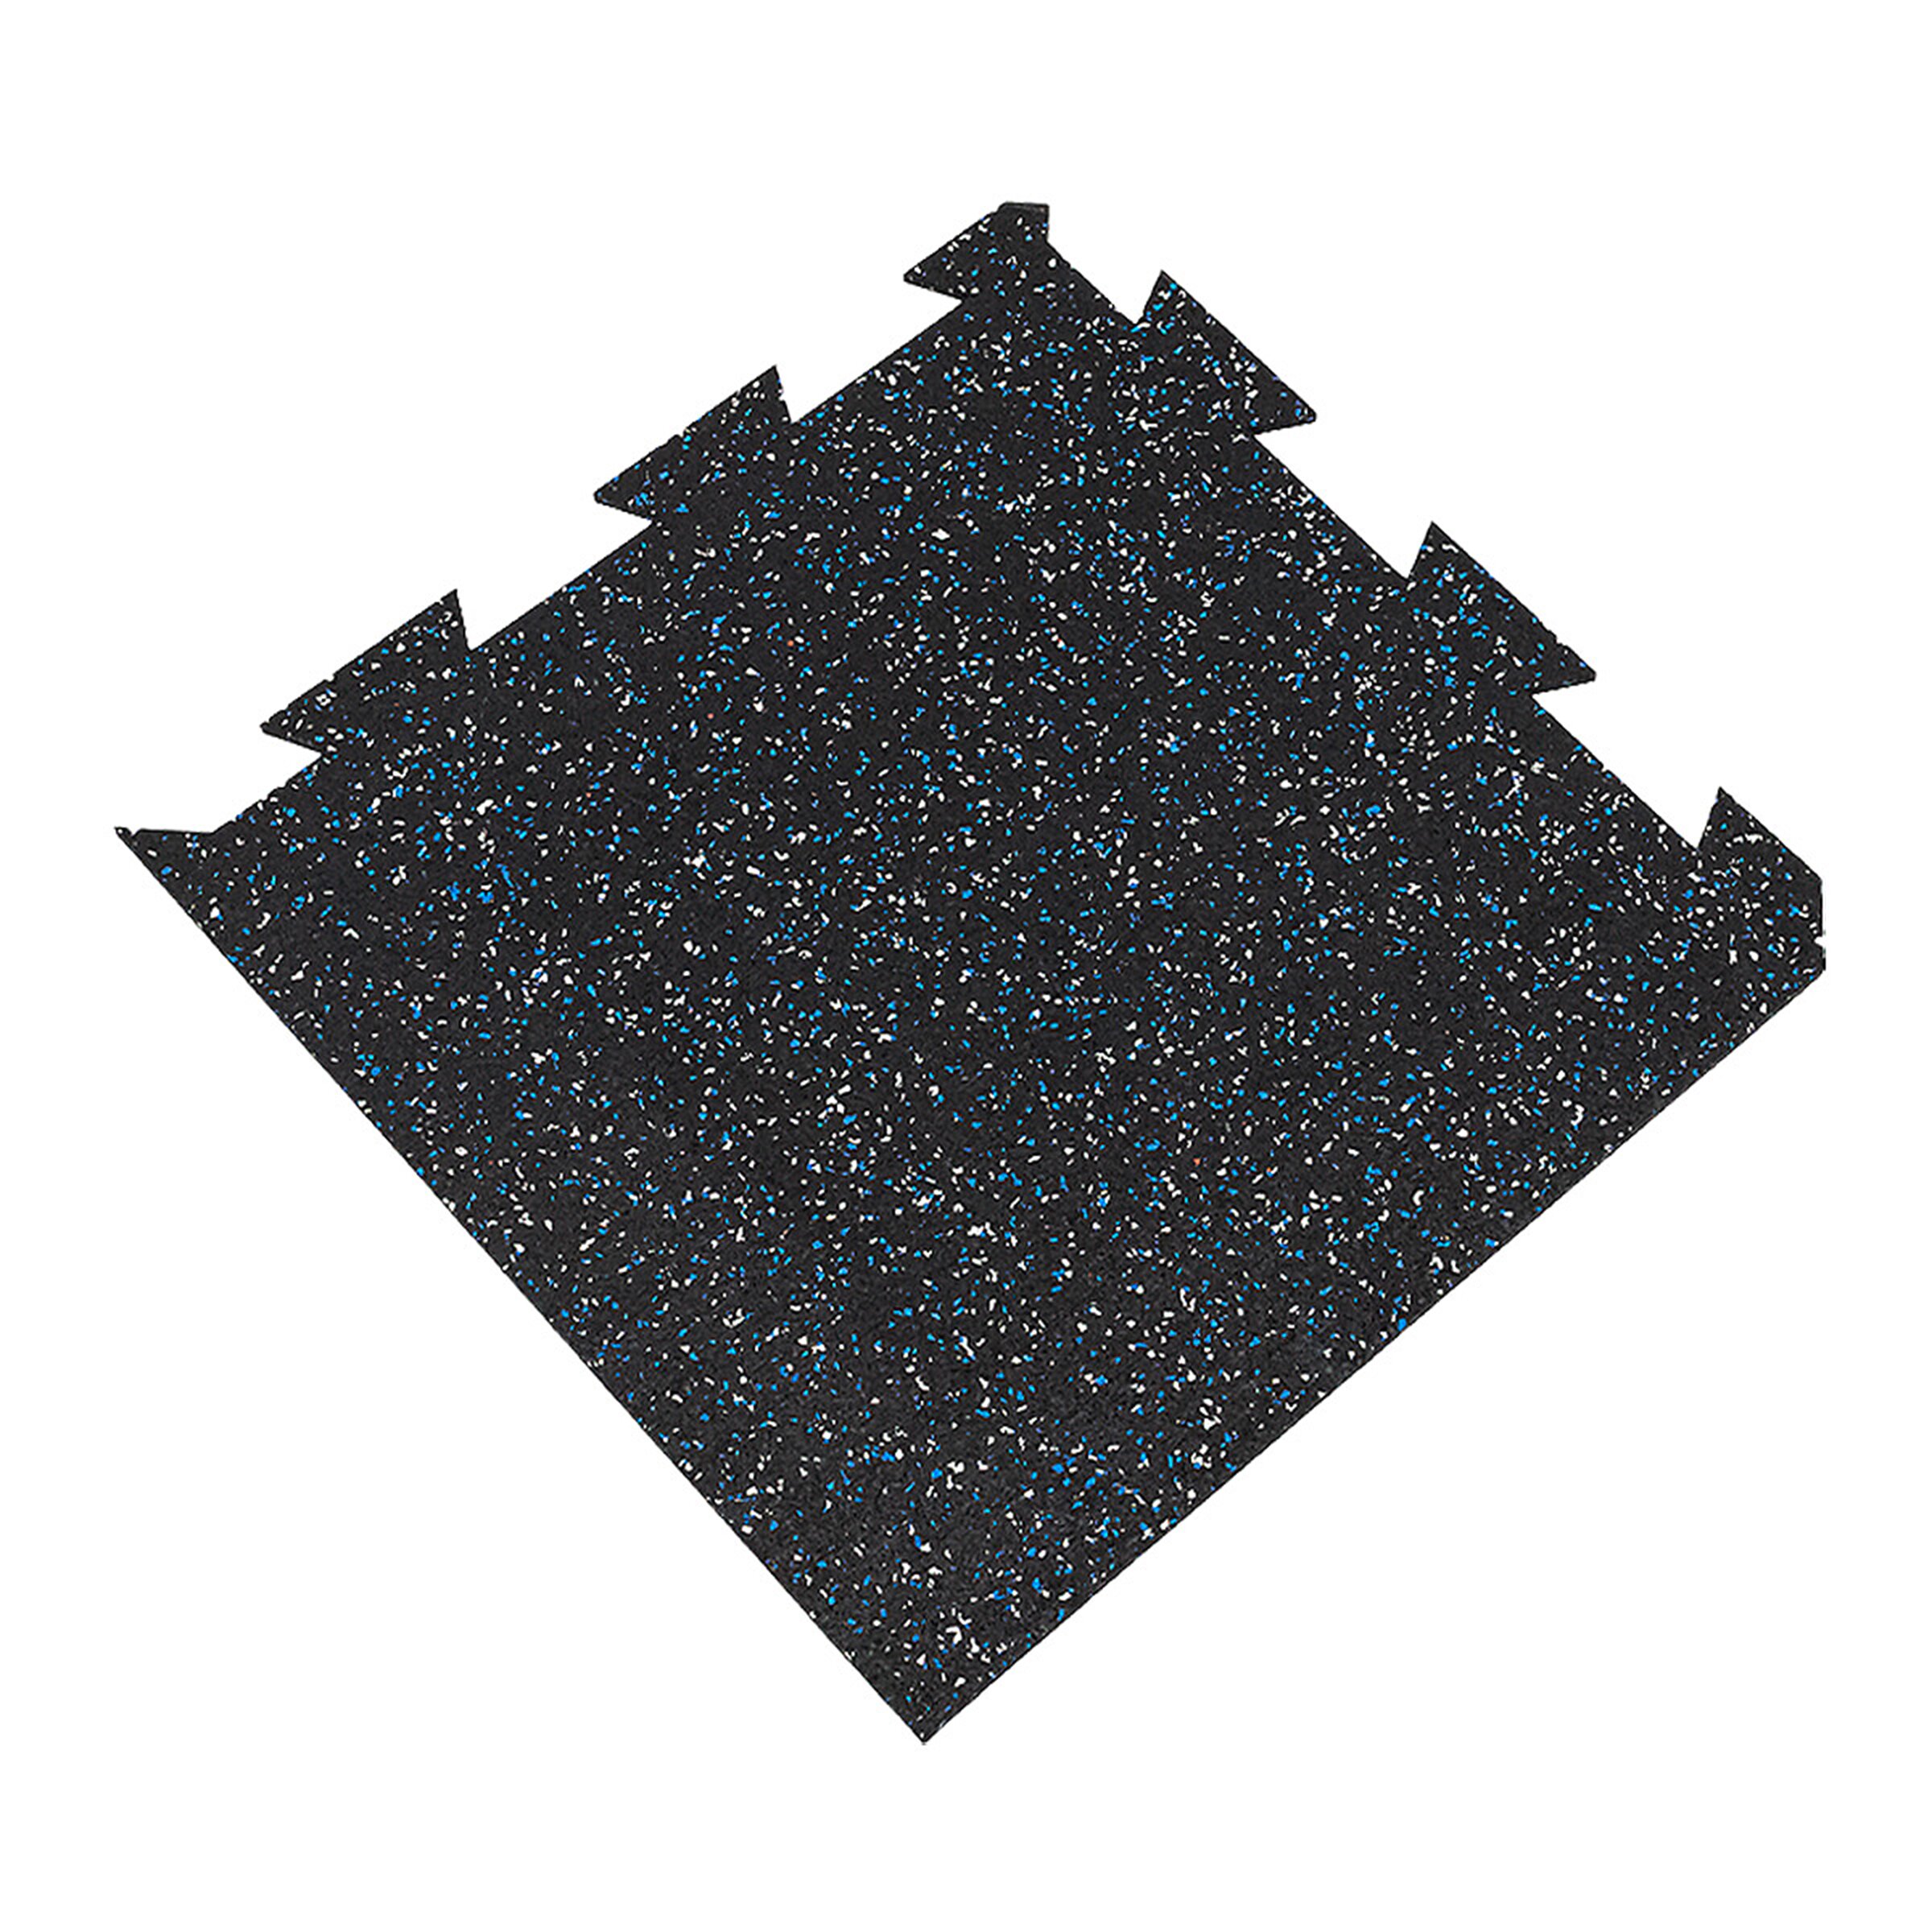 Černo-bílo-modrá gumová puzzle modulová dlažba FLOMA SF1050 FitFlo - délka 50 cm, šířka 50 cm, výška 1,6 cm